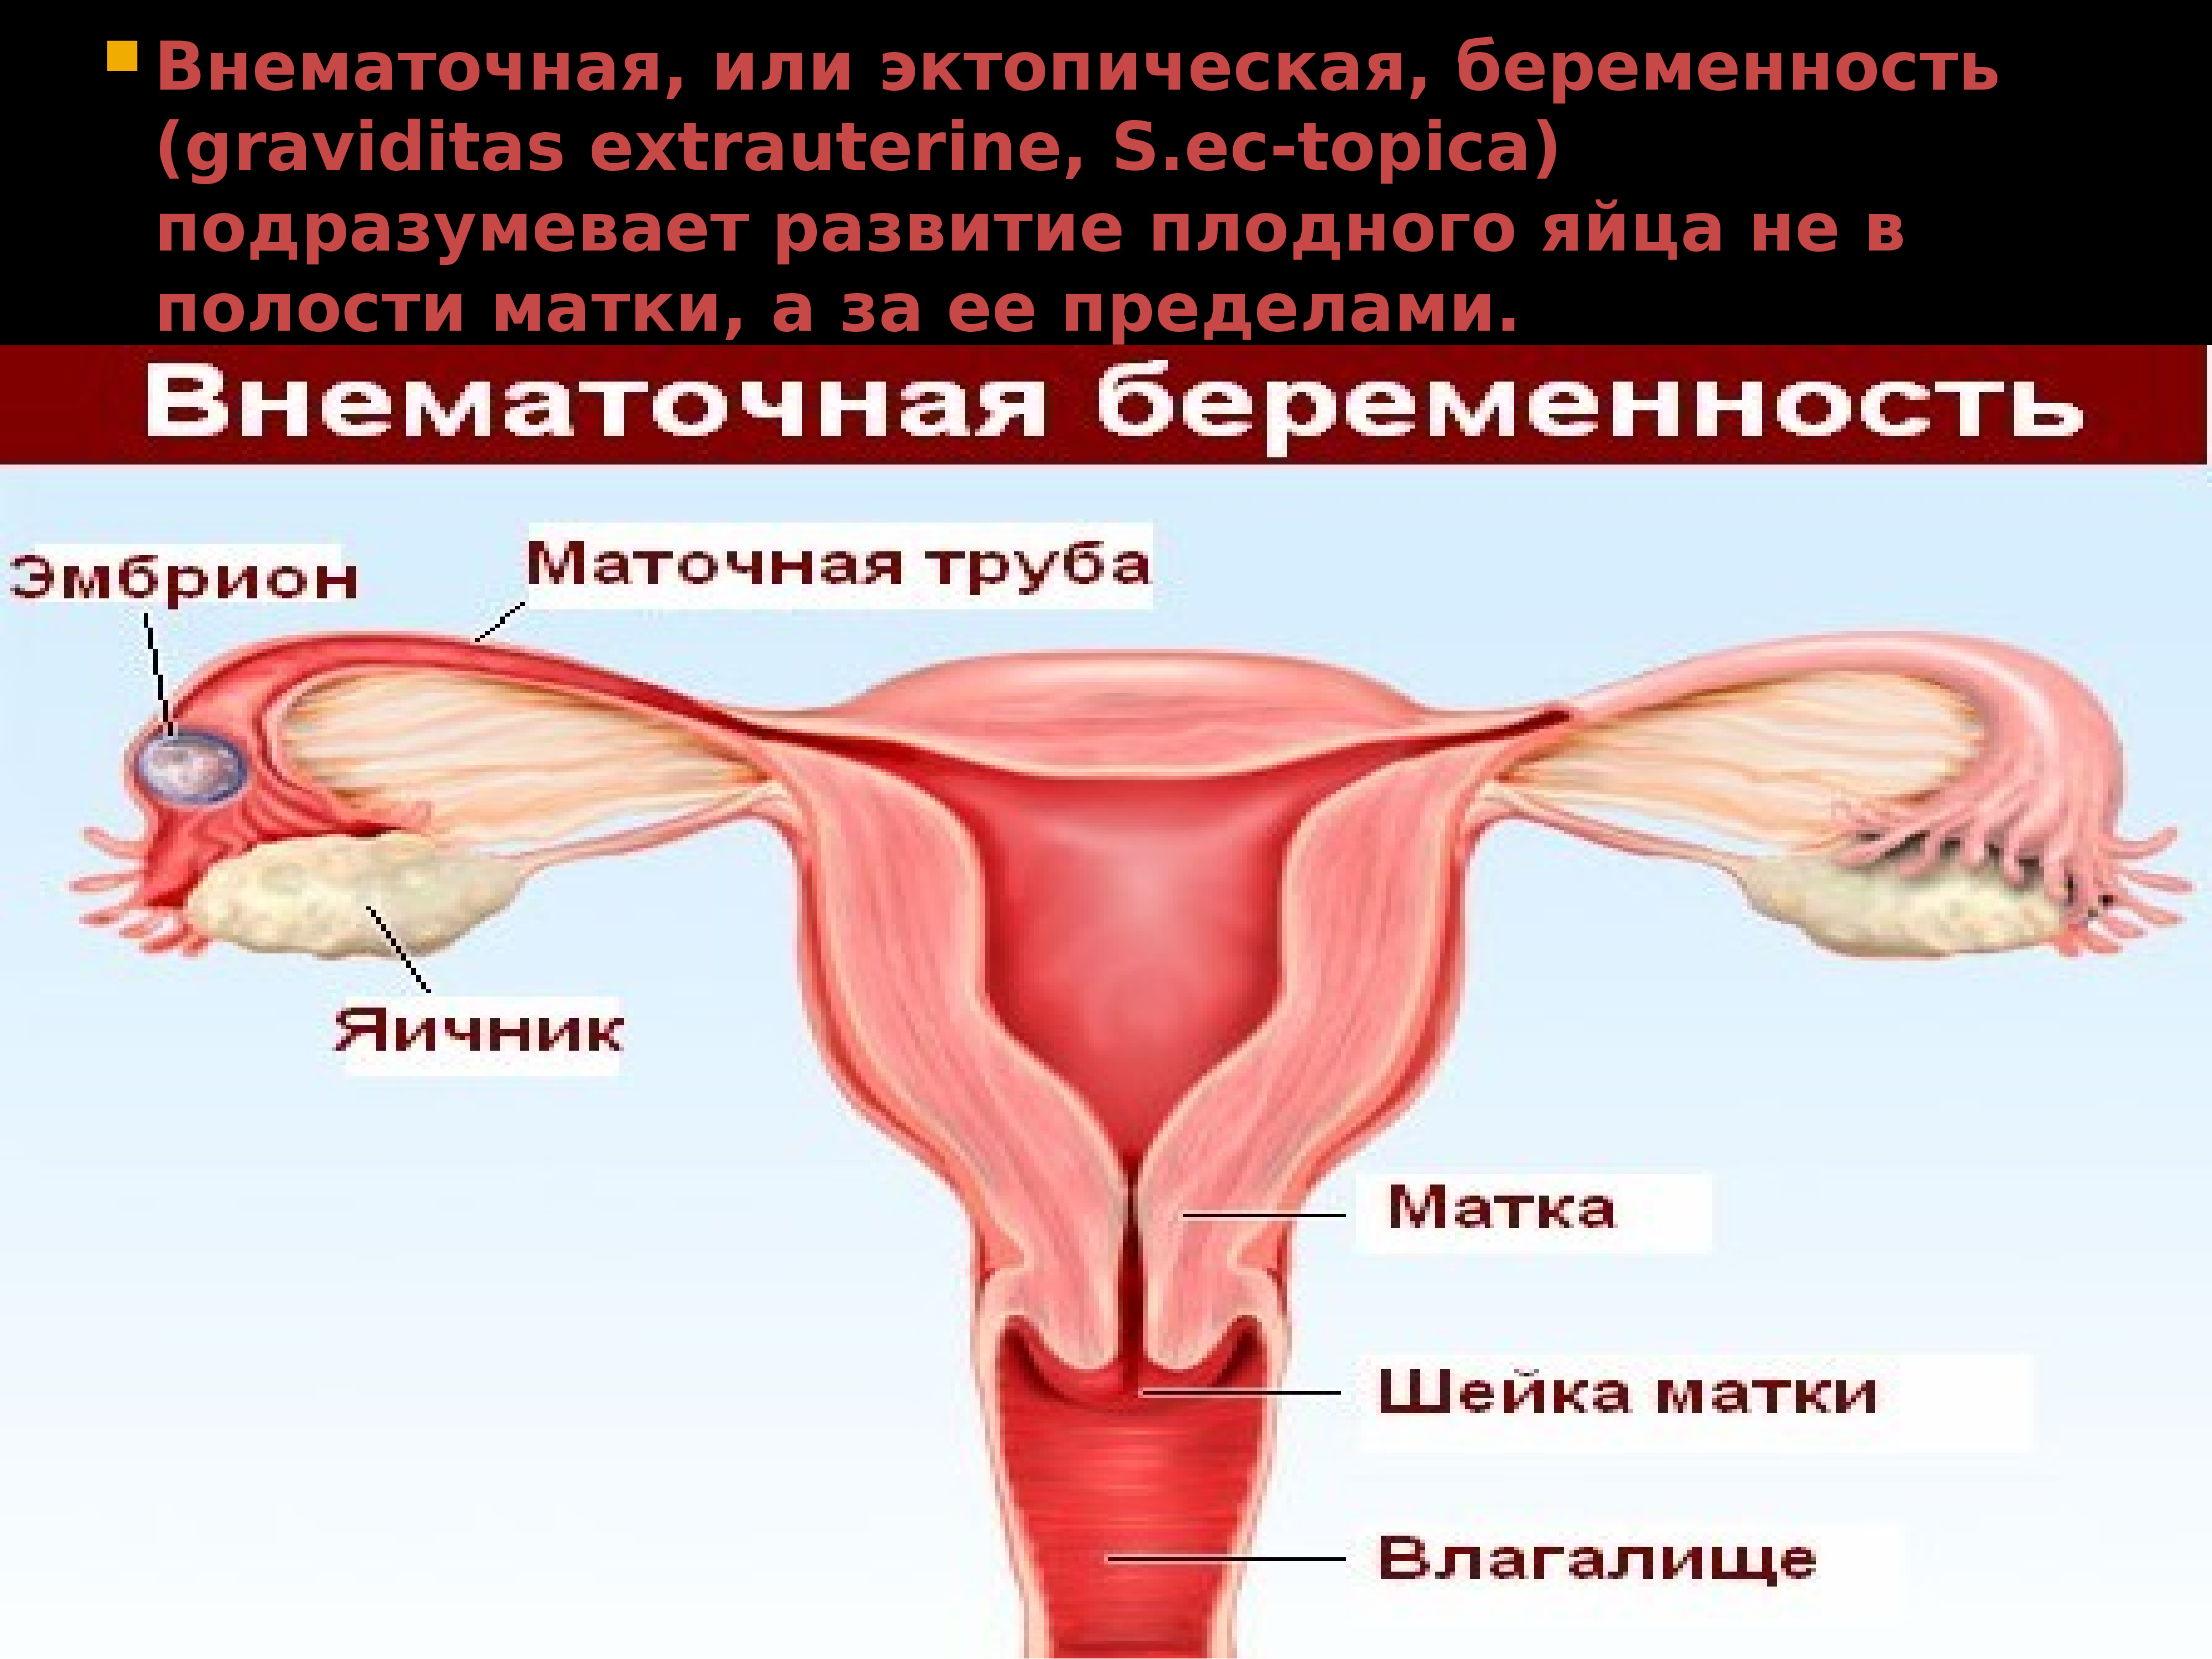 увеличивается грудь при внематочной беременности фото 8